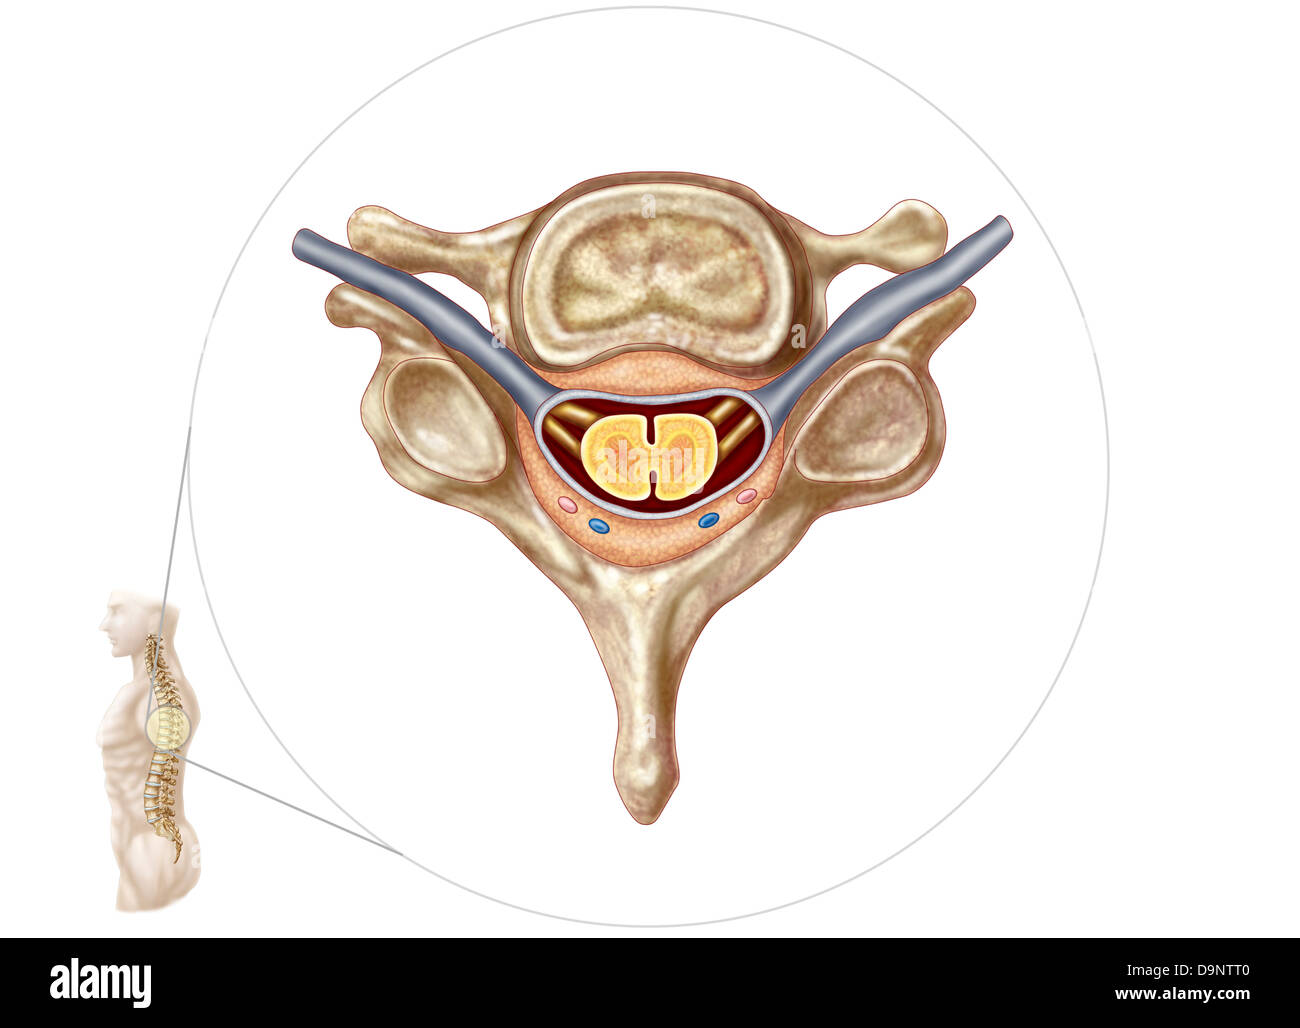 Anatomia della vertebra umana. Foto Stock